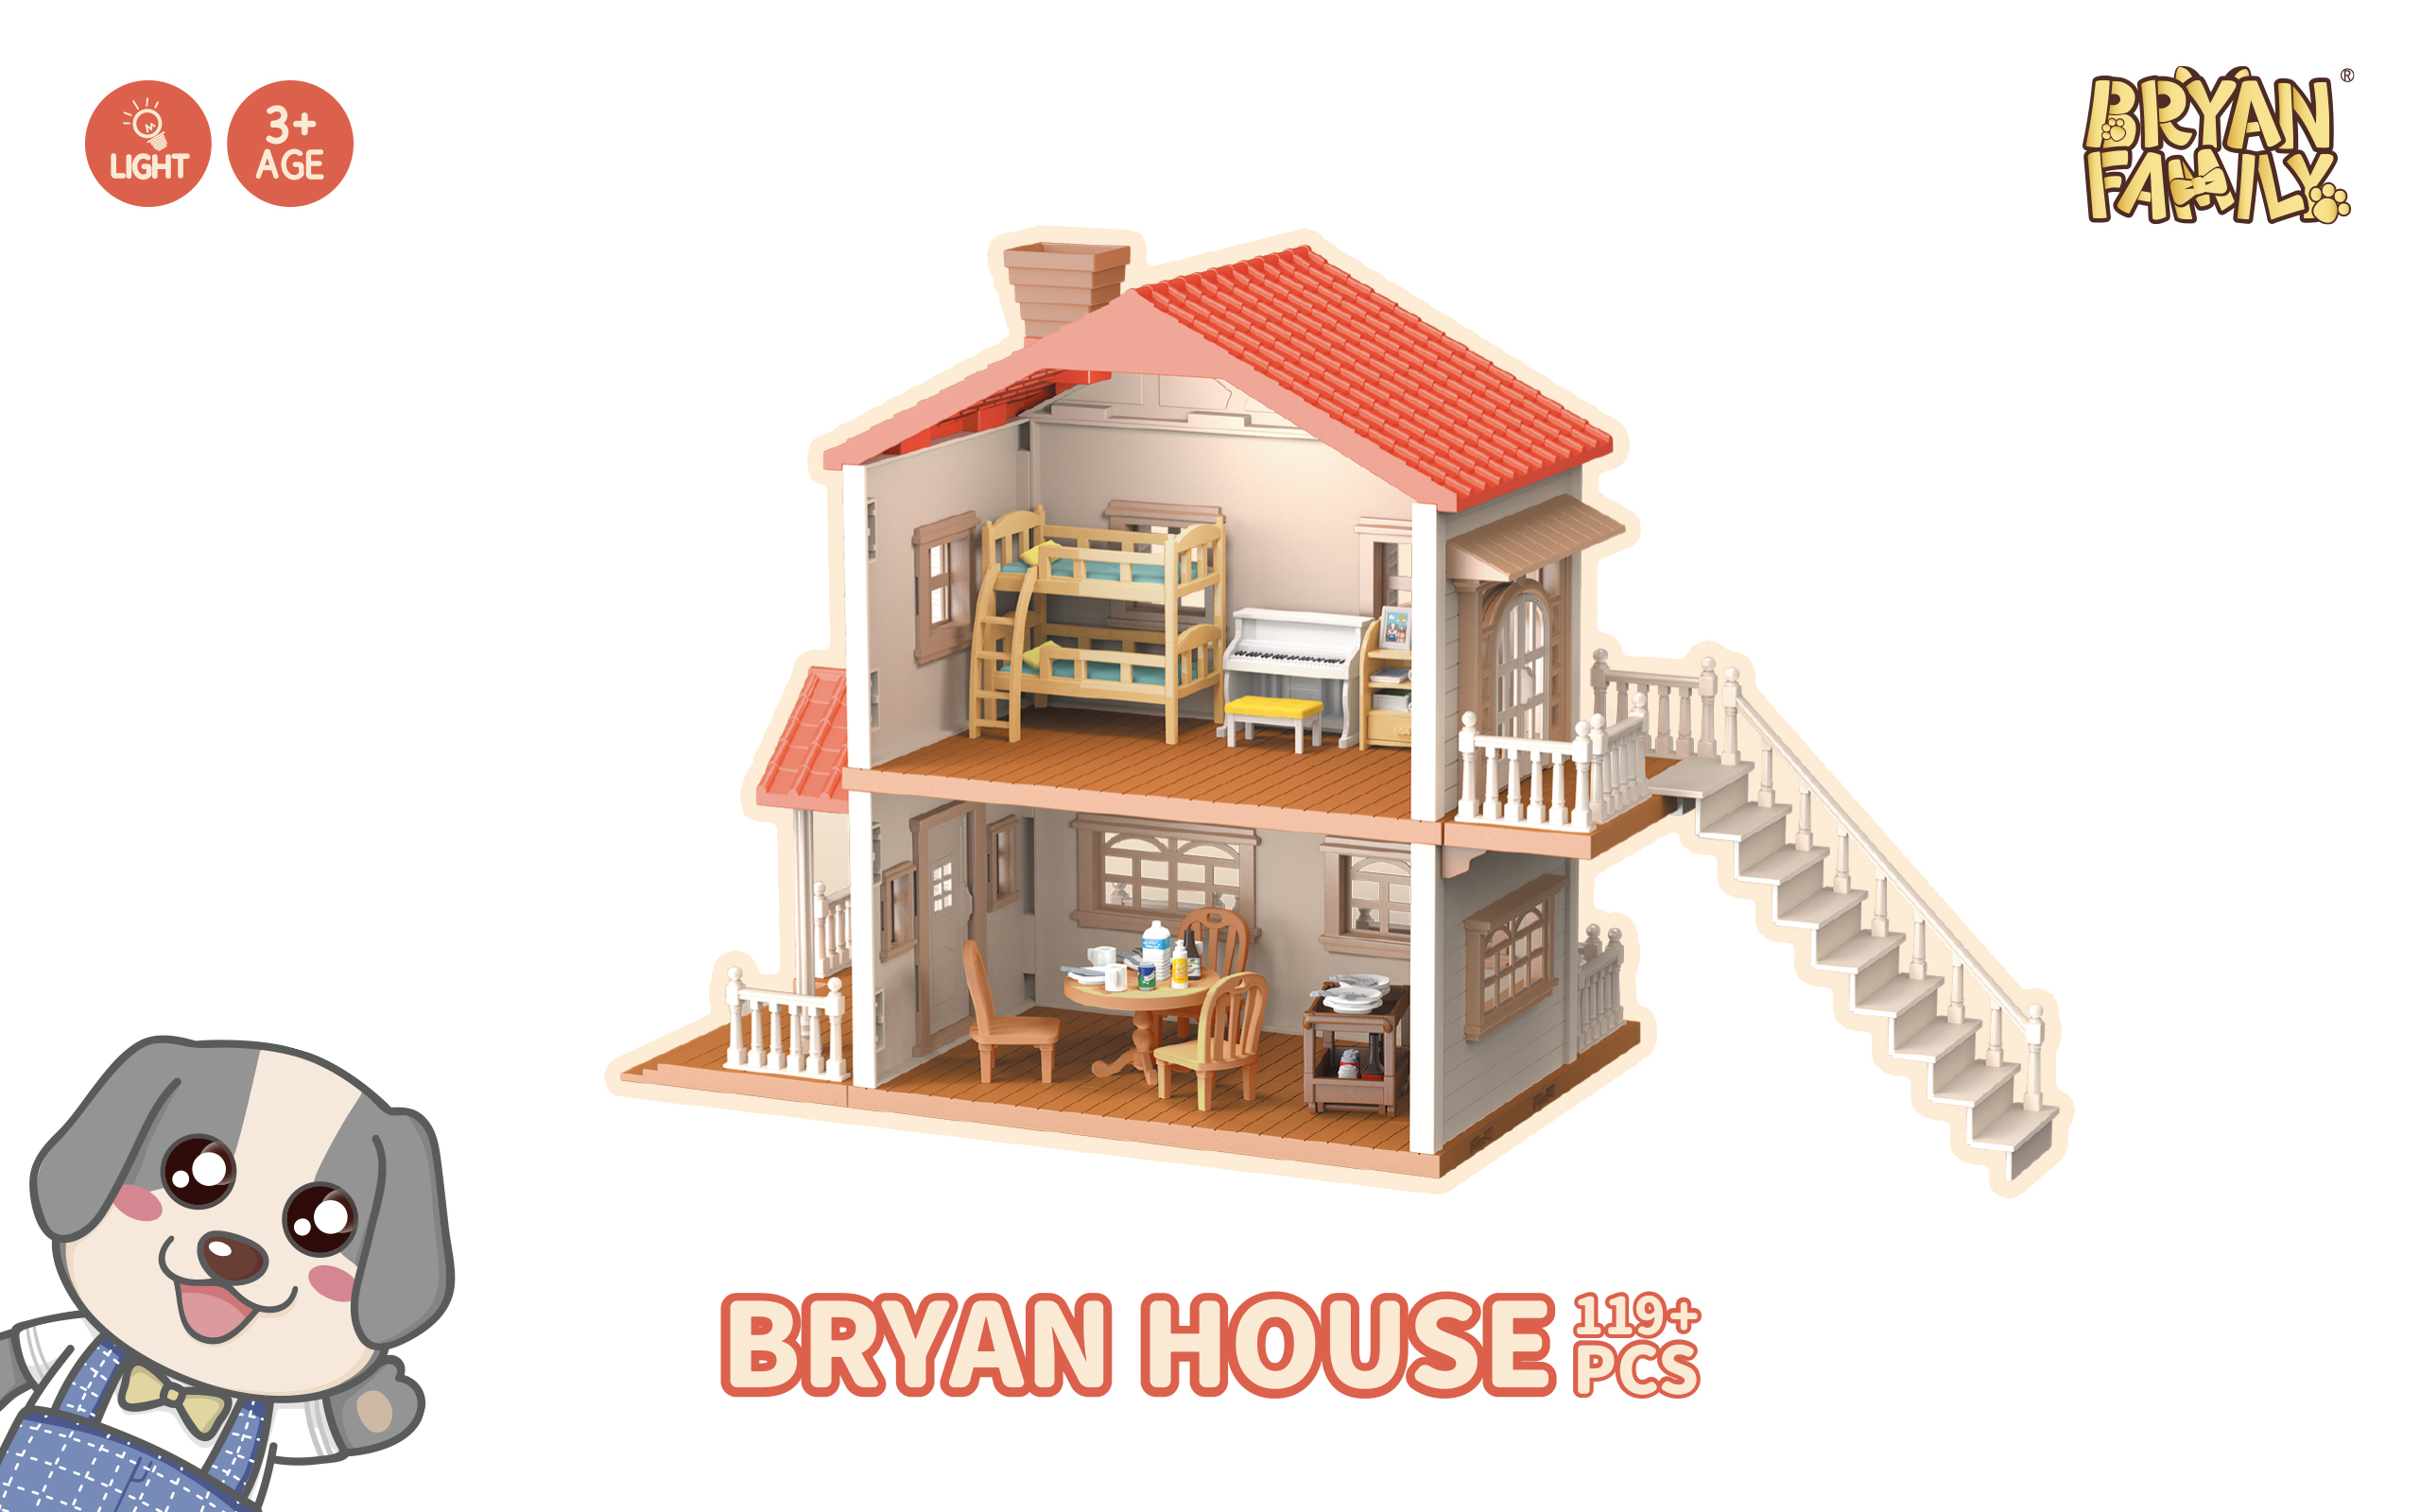 Bryan House 119+PCS